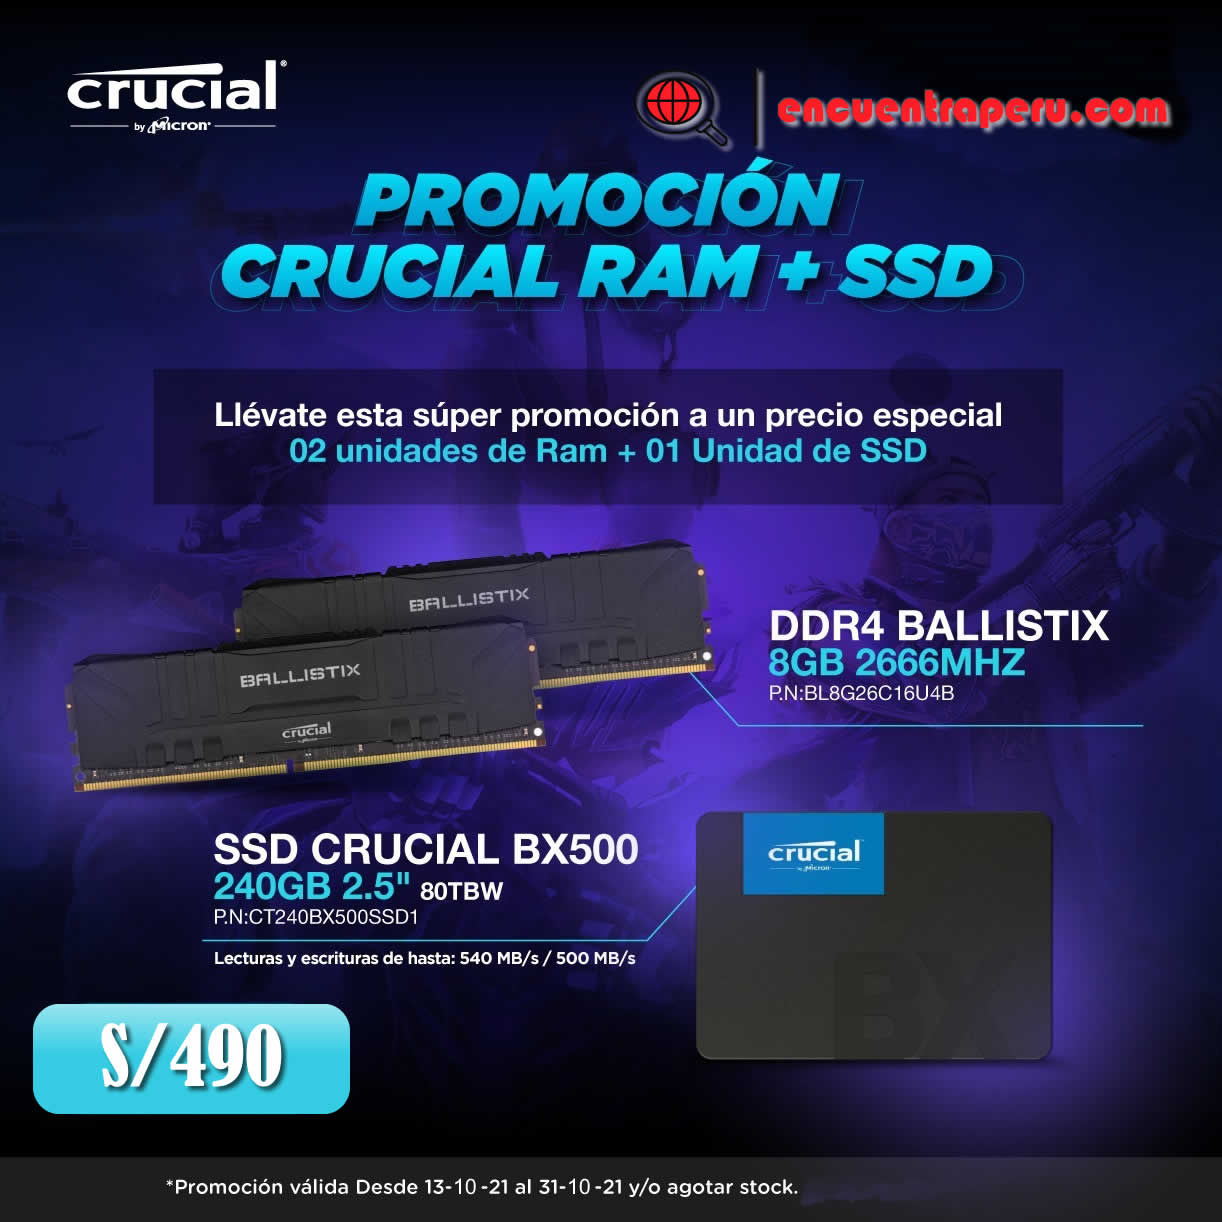 Promoción Crusial Ram + SSD